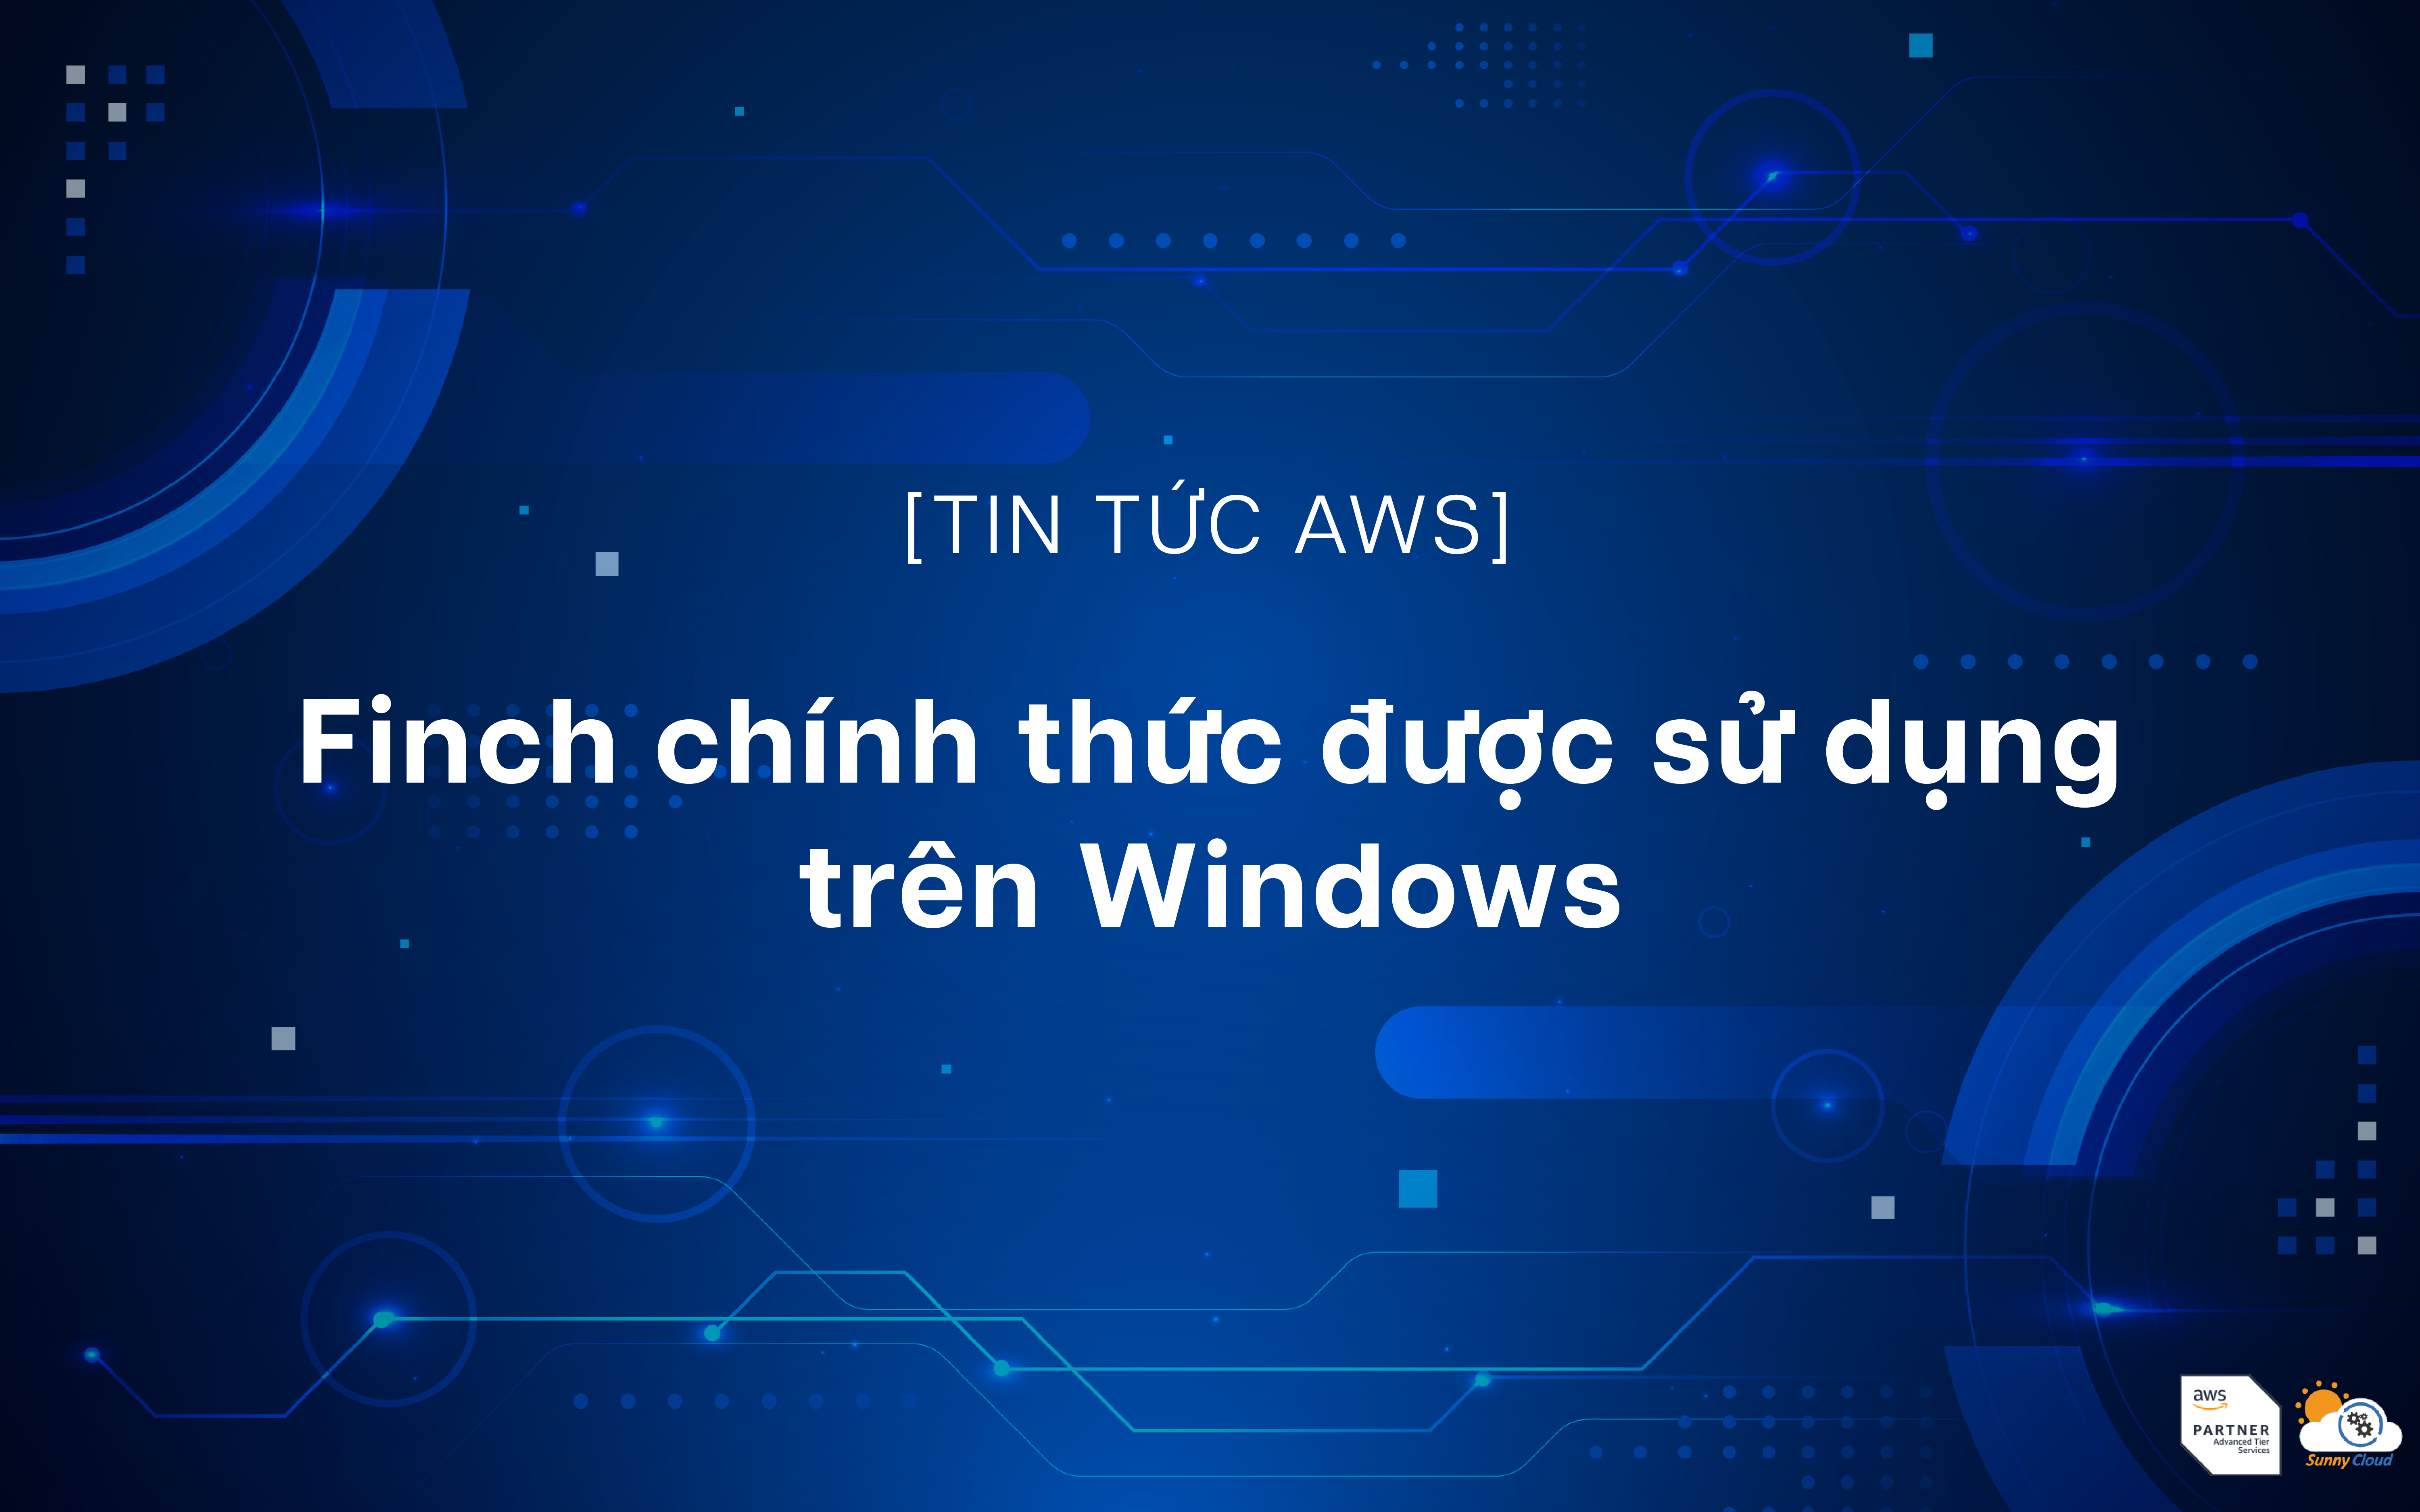 Finch chính thức được sử dụng trên Windows